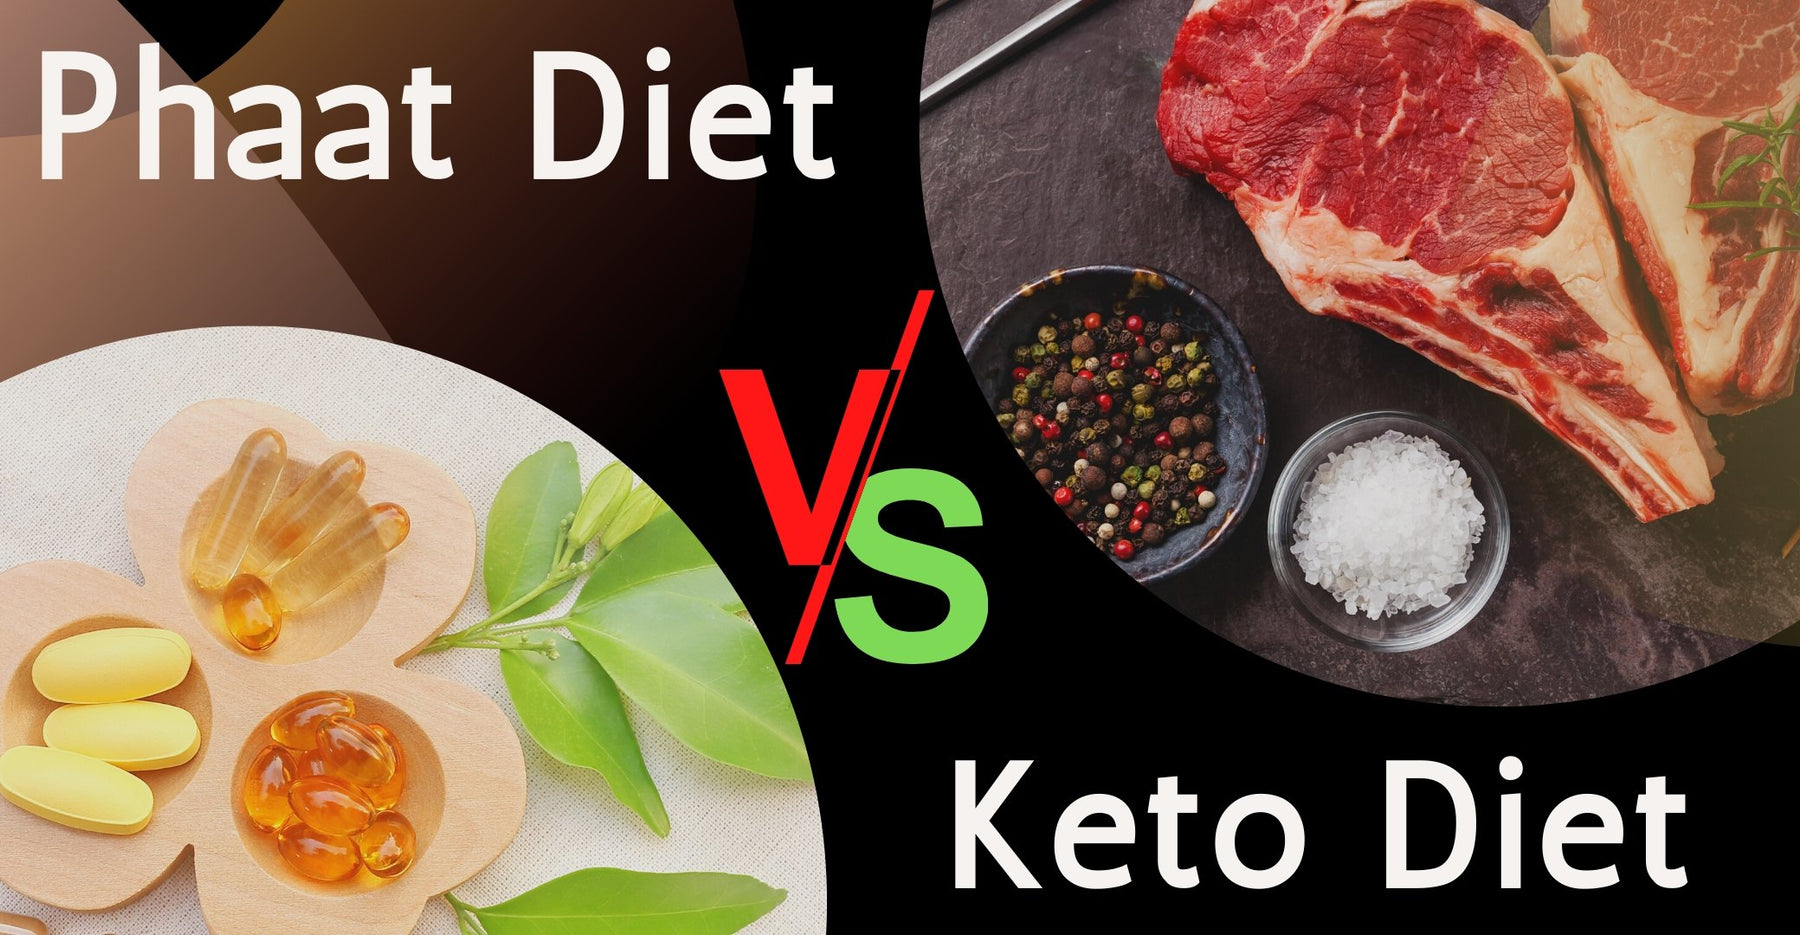 Phatt diet vs Keto diet - Roshni Sanghvi